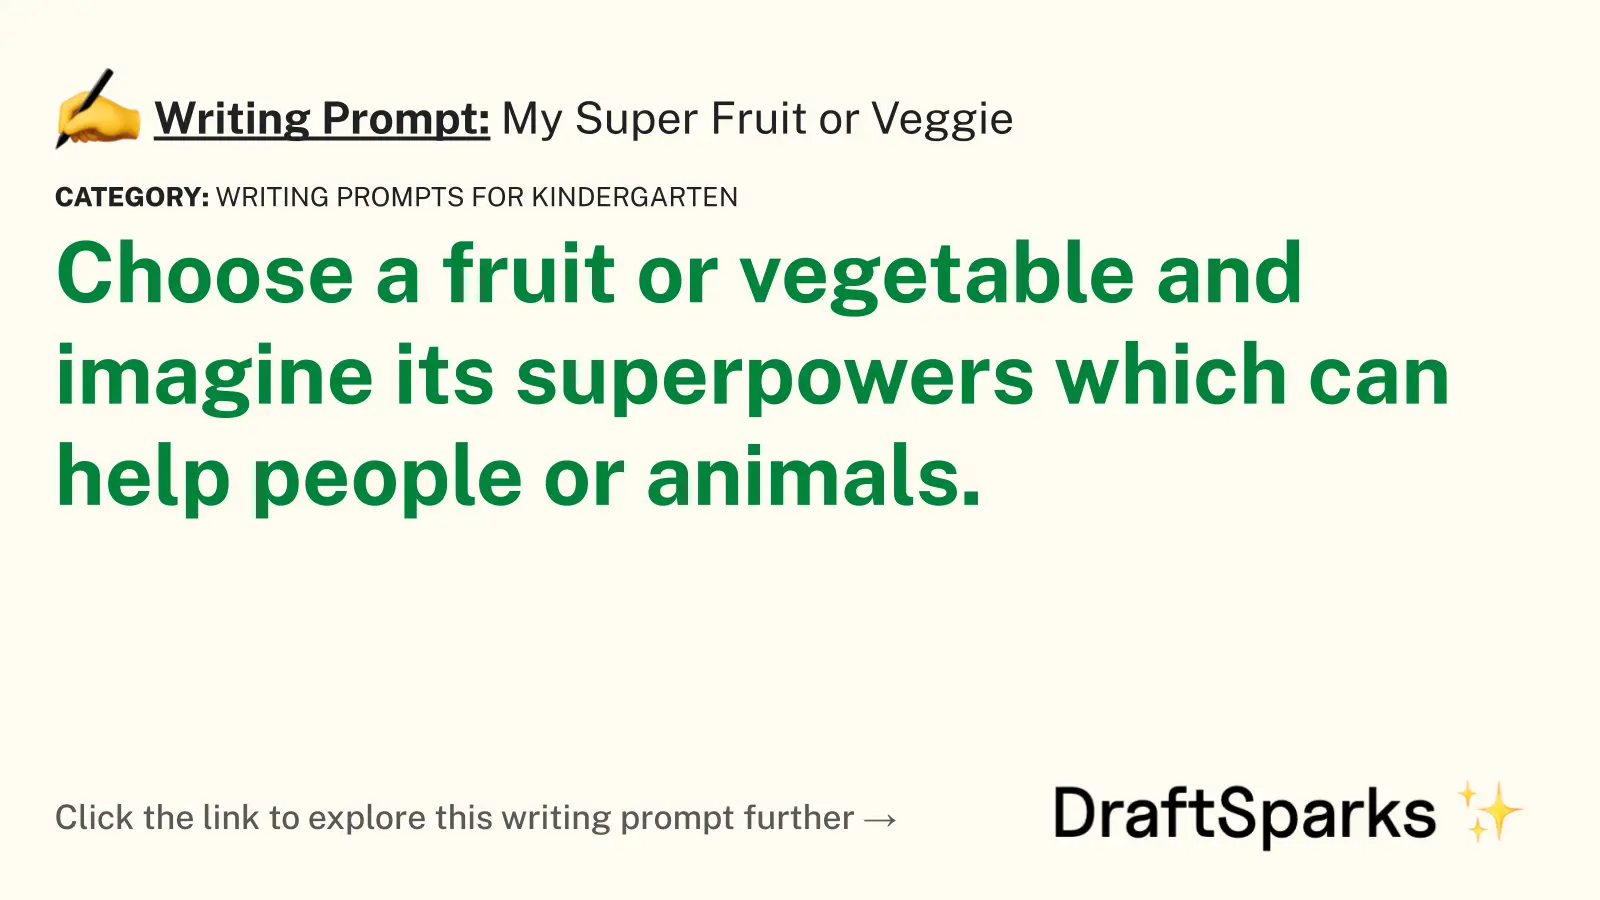 My Super Fruit or Veggie